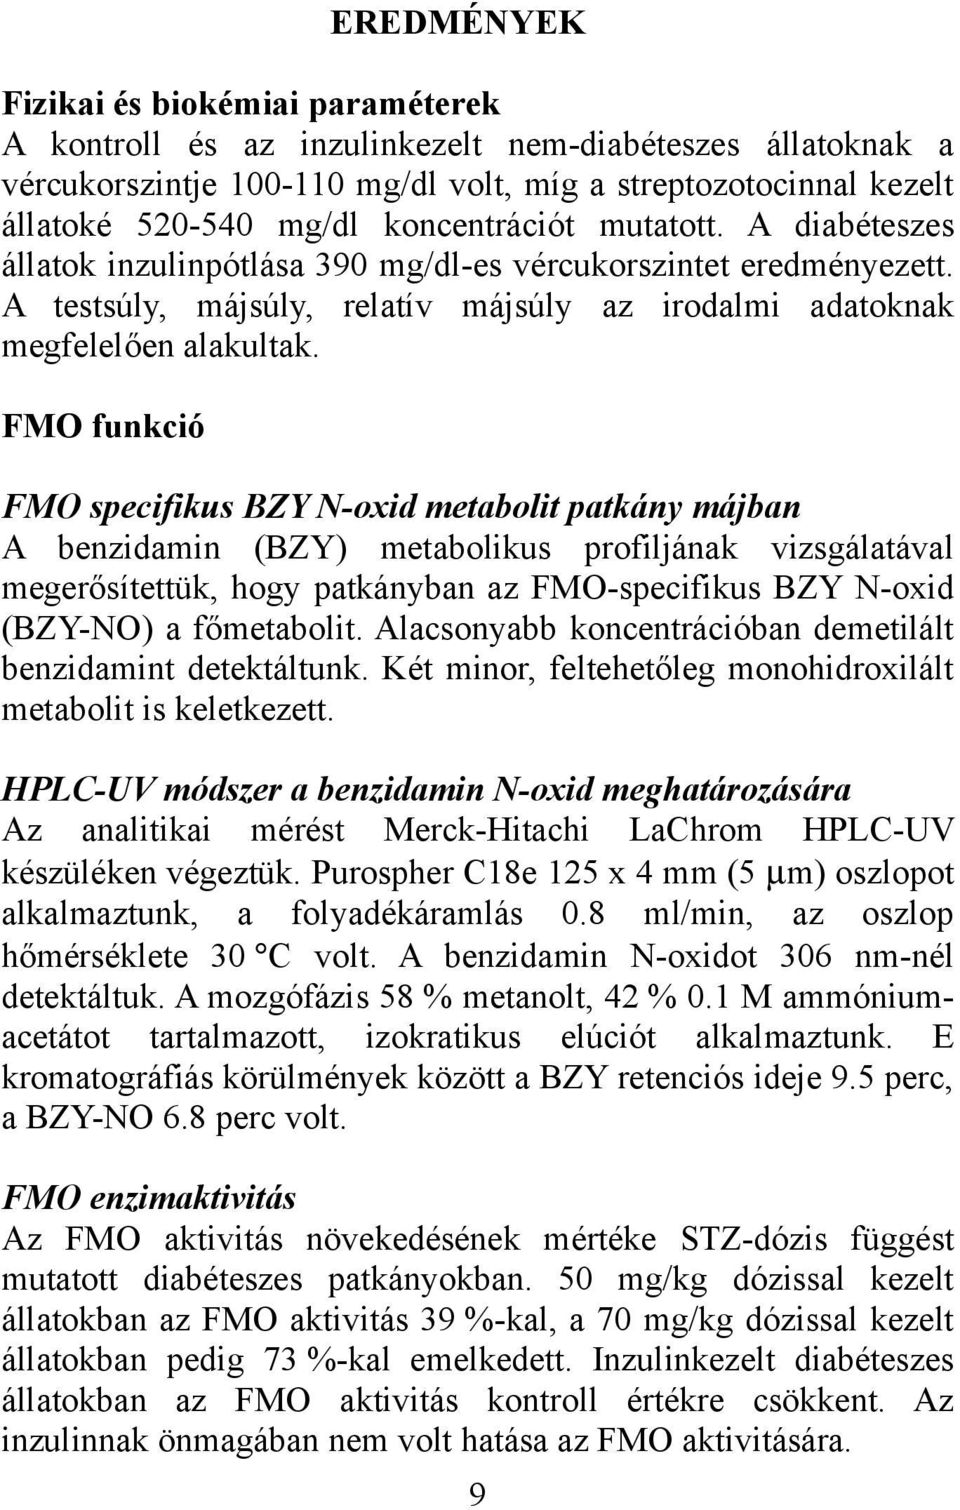 FMO funkció FMO specifikus BZY N-oxid metabolit patkány májban A benzidamin (BZY) metabolikus profiljának vizsgálatával megerősítettük, hogy patkányban az FMO-specifikus BZY N-oxid (BZY-NO) a